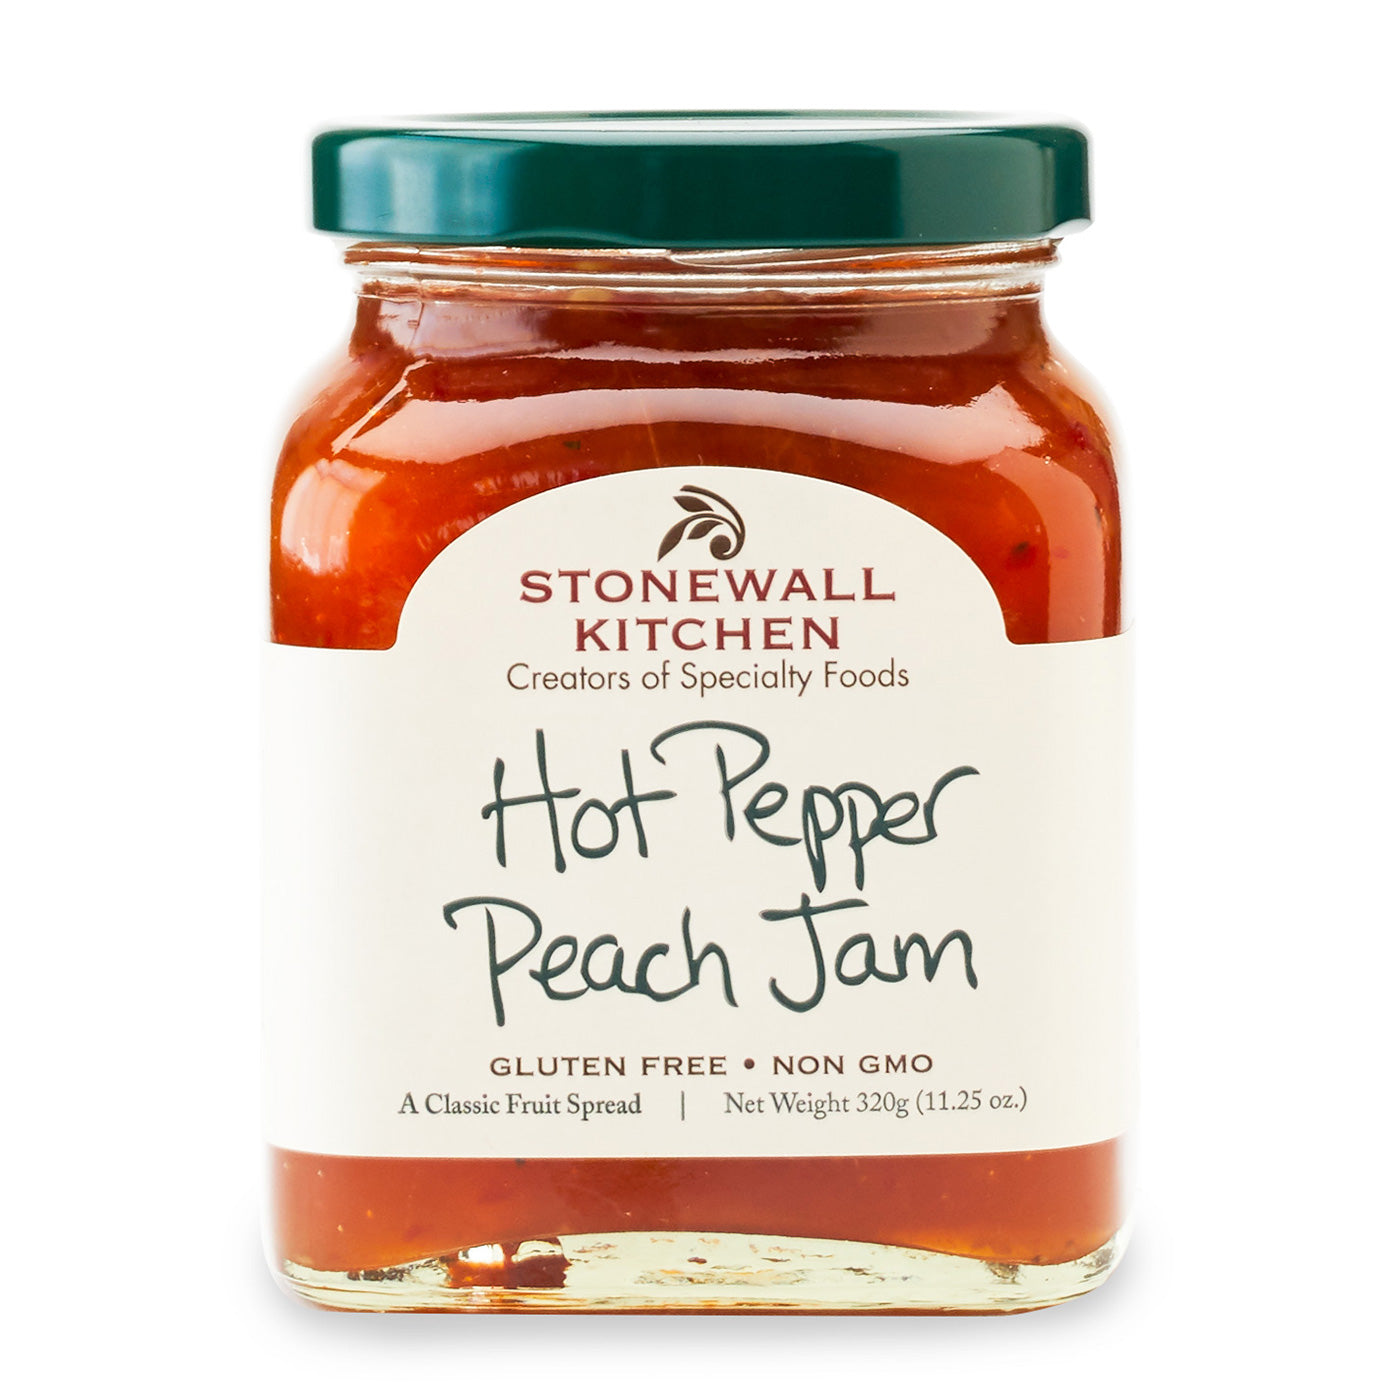 Hot Pepper Peach Jam 12 0z.